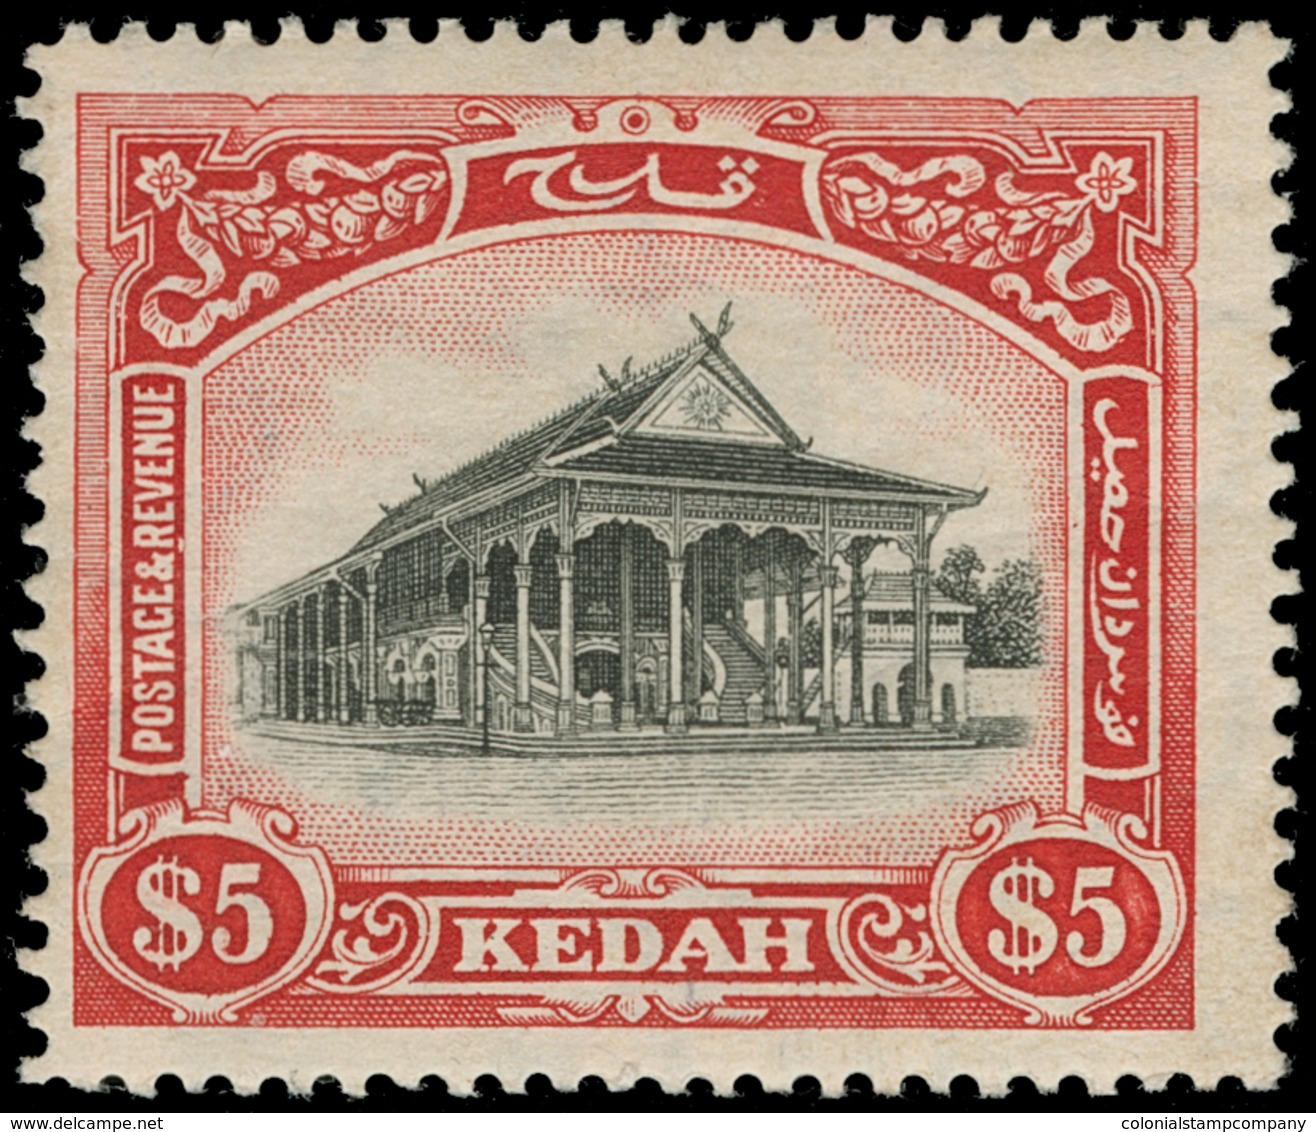 * Malaya / Kedah - Lot No.727 - Kedah